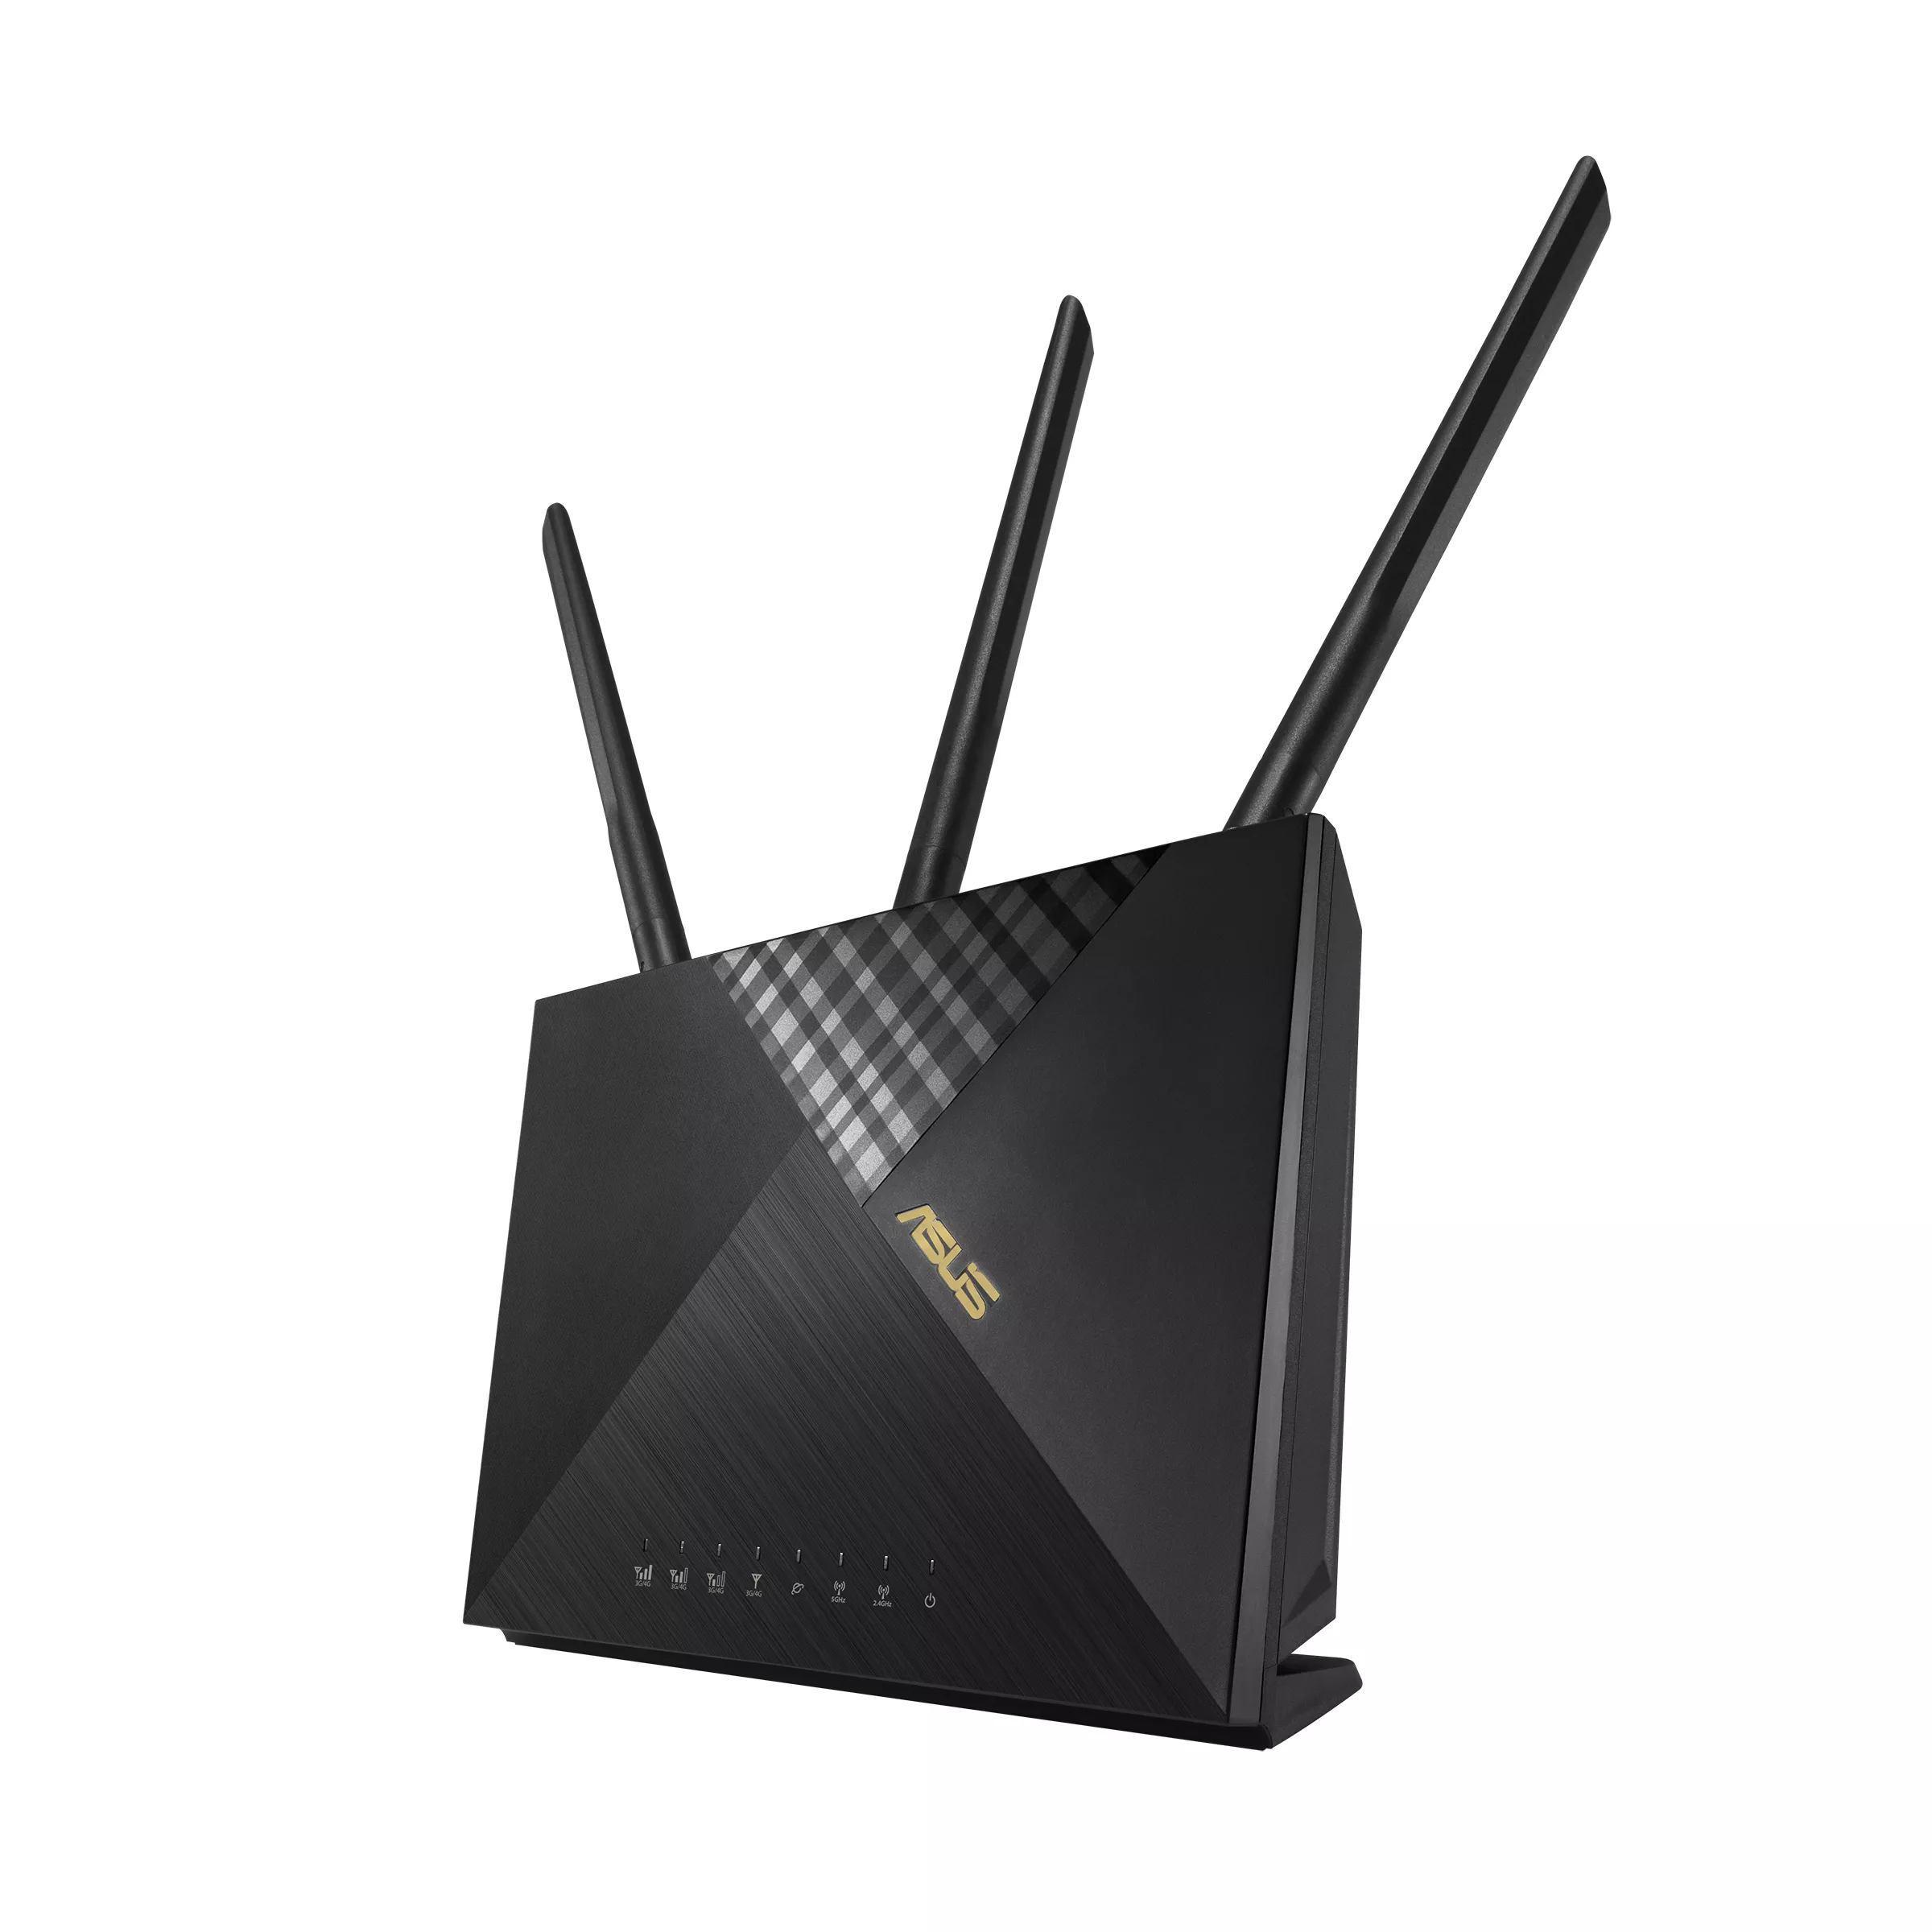 Achat Routeur ASUS Wireless-AX1800 Dual-band LTE Modem Router sur hello RSE